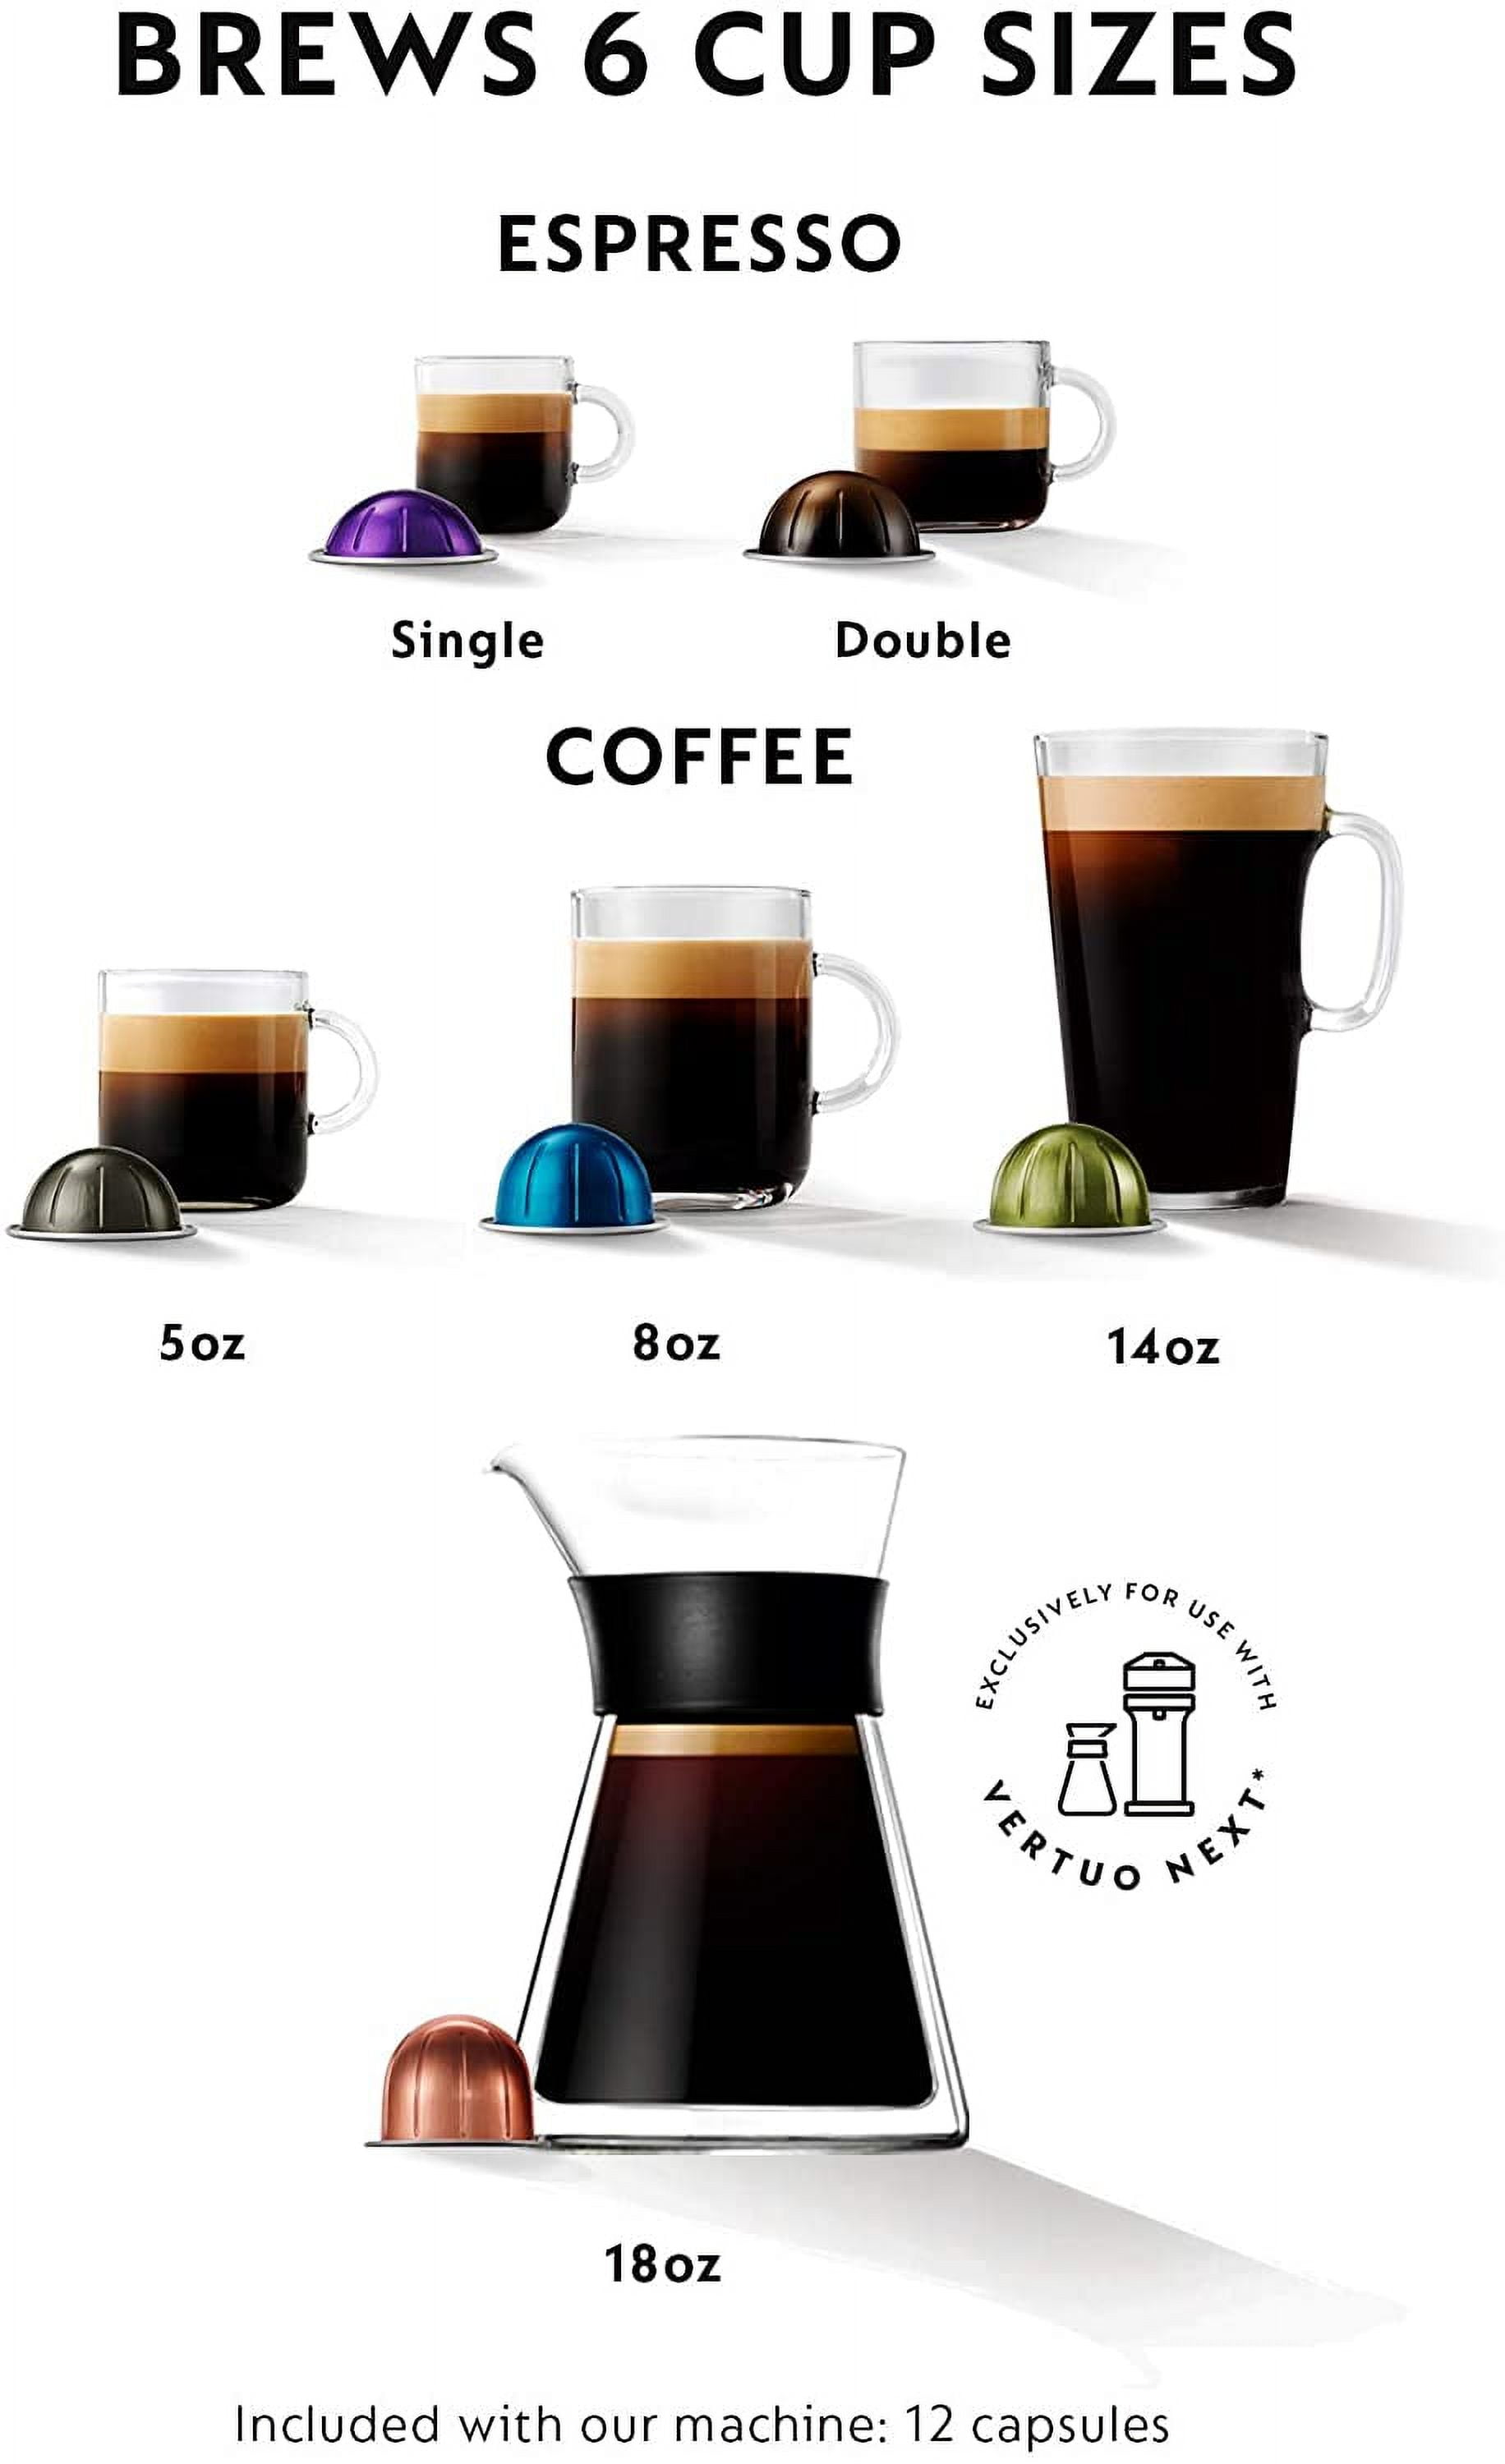 €205.99 De'Longhi Nespresso Vertuo Next ENV 120.BWAE - Macchina per caffè  con montalatte Aeroccino, colore: Marrone